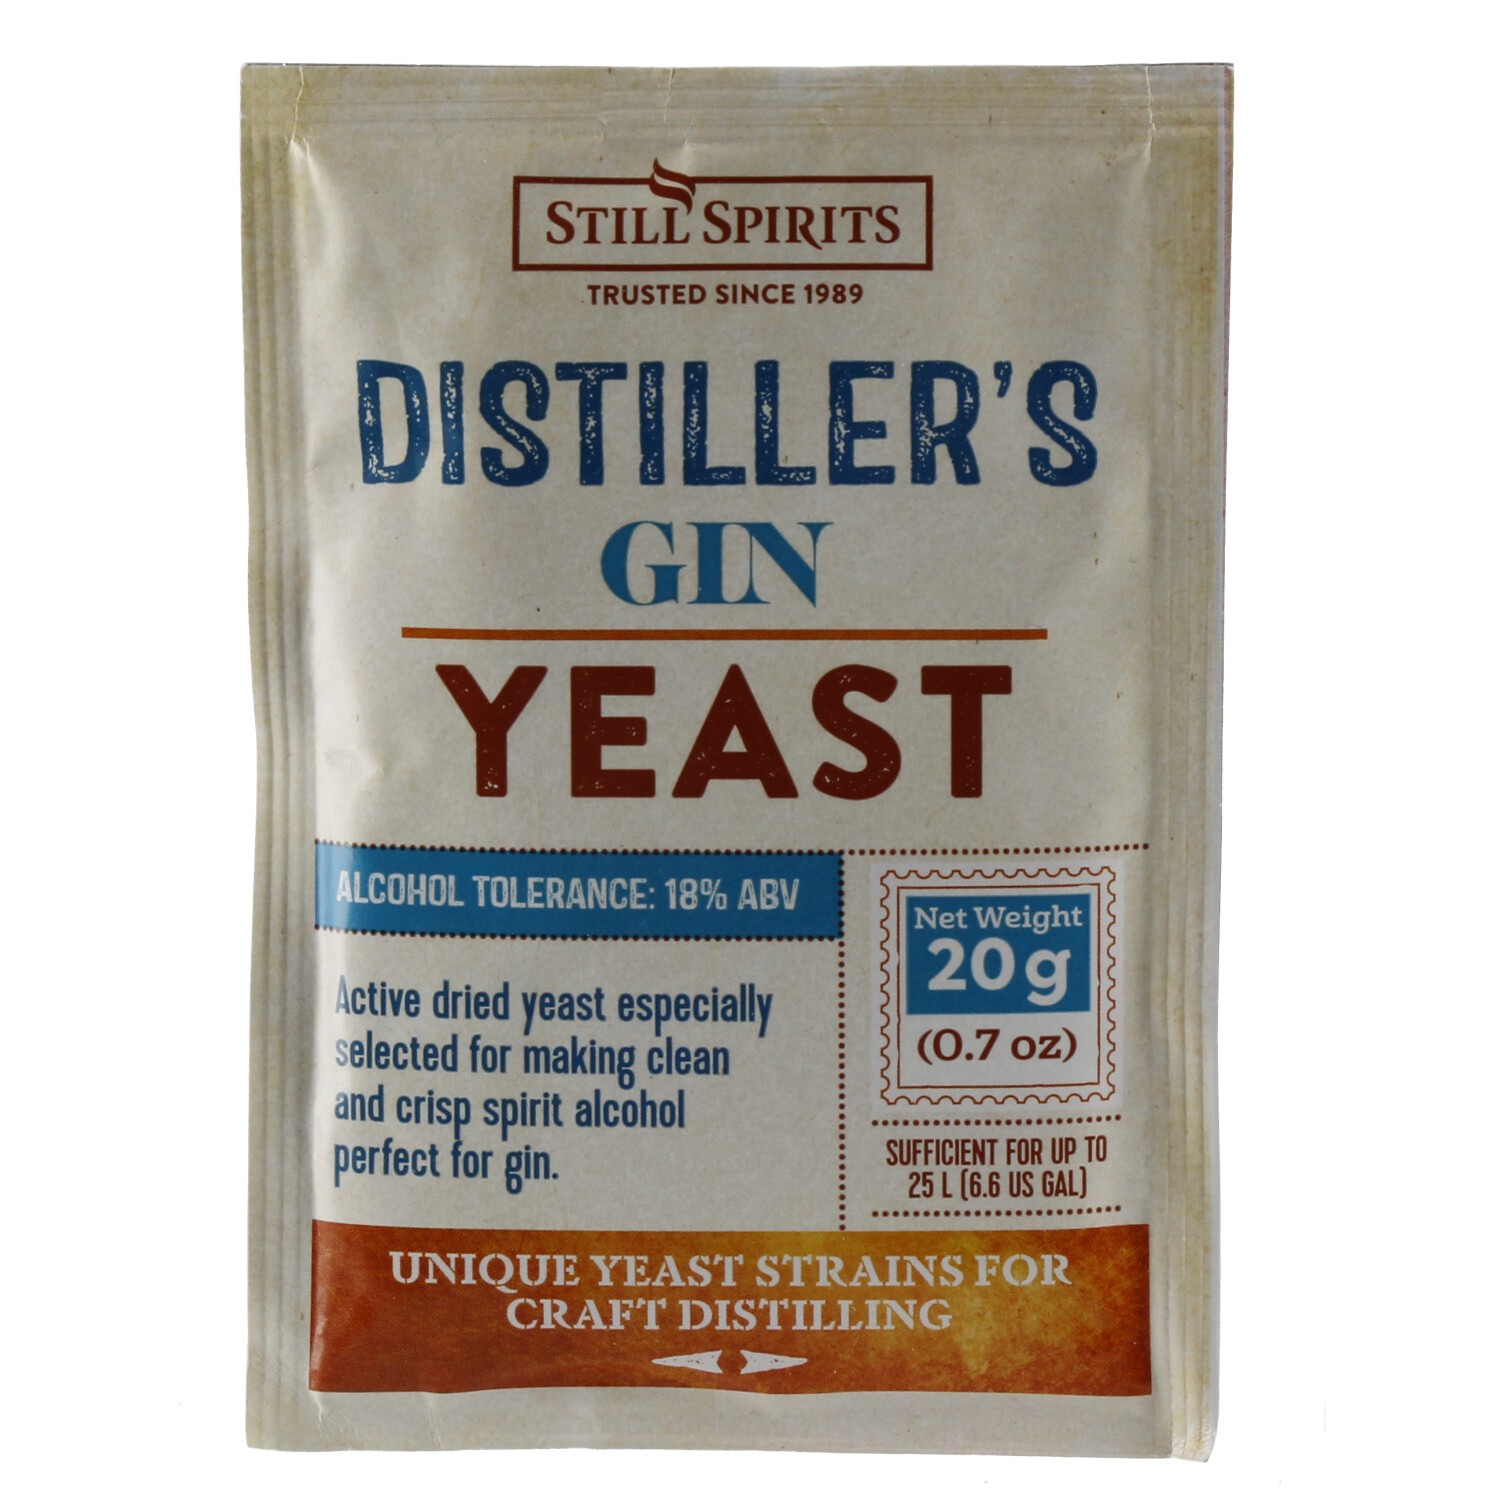 Still Spirits Distiller's Yeast Gin 20 g